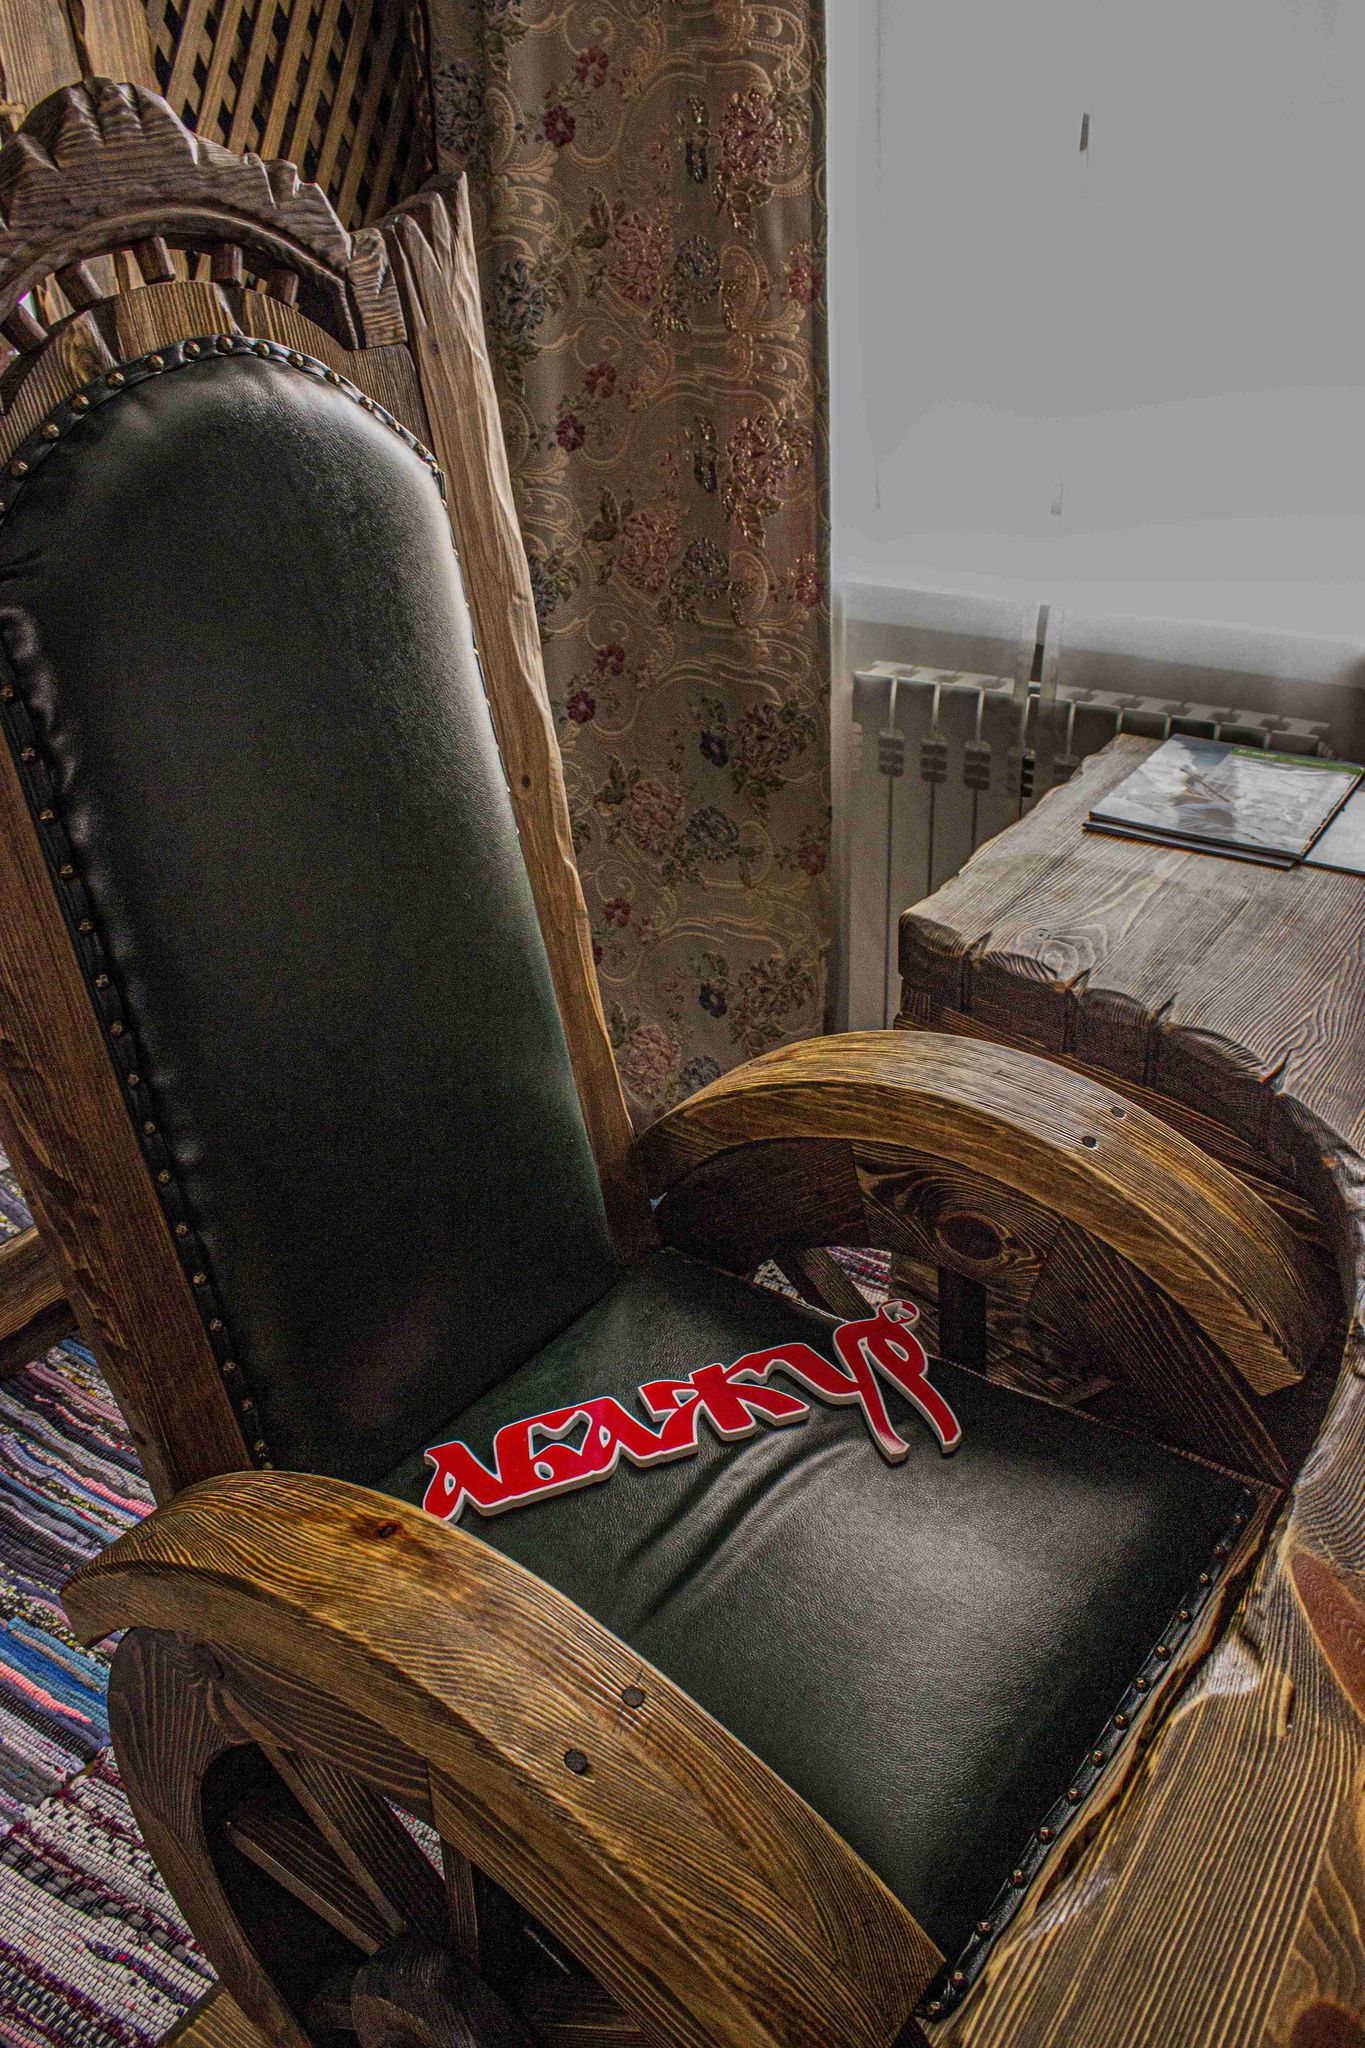 Кресло донорское Стильмед МД-КПС-4 (колеса, штатив, валик) цена, фото, описание, купить в МедМебель